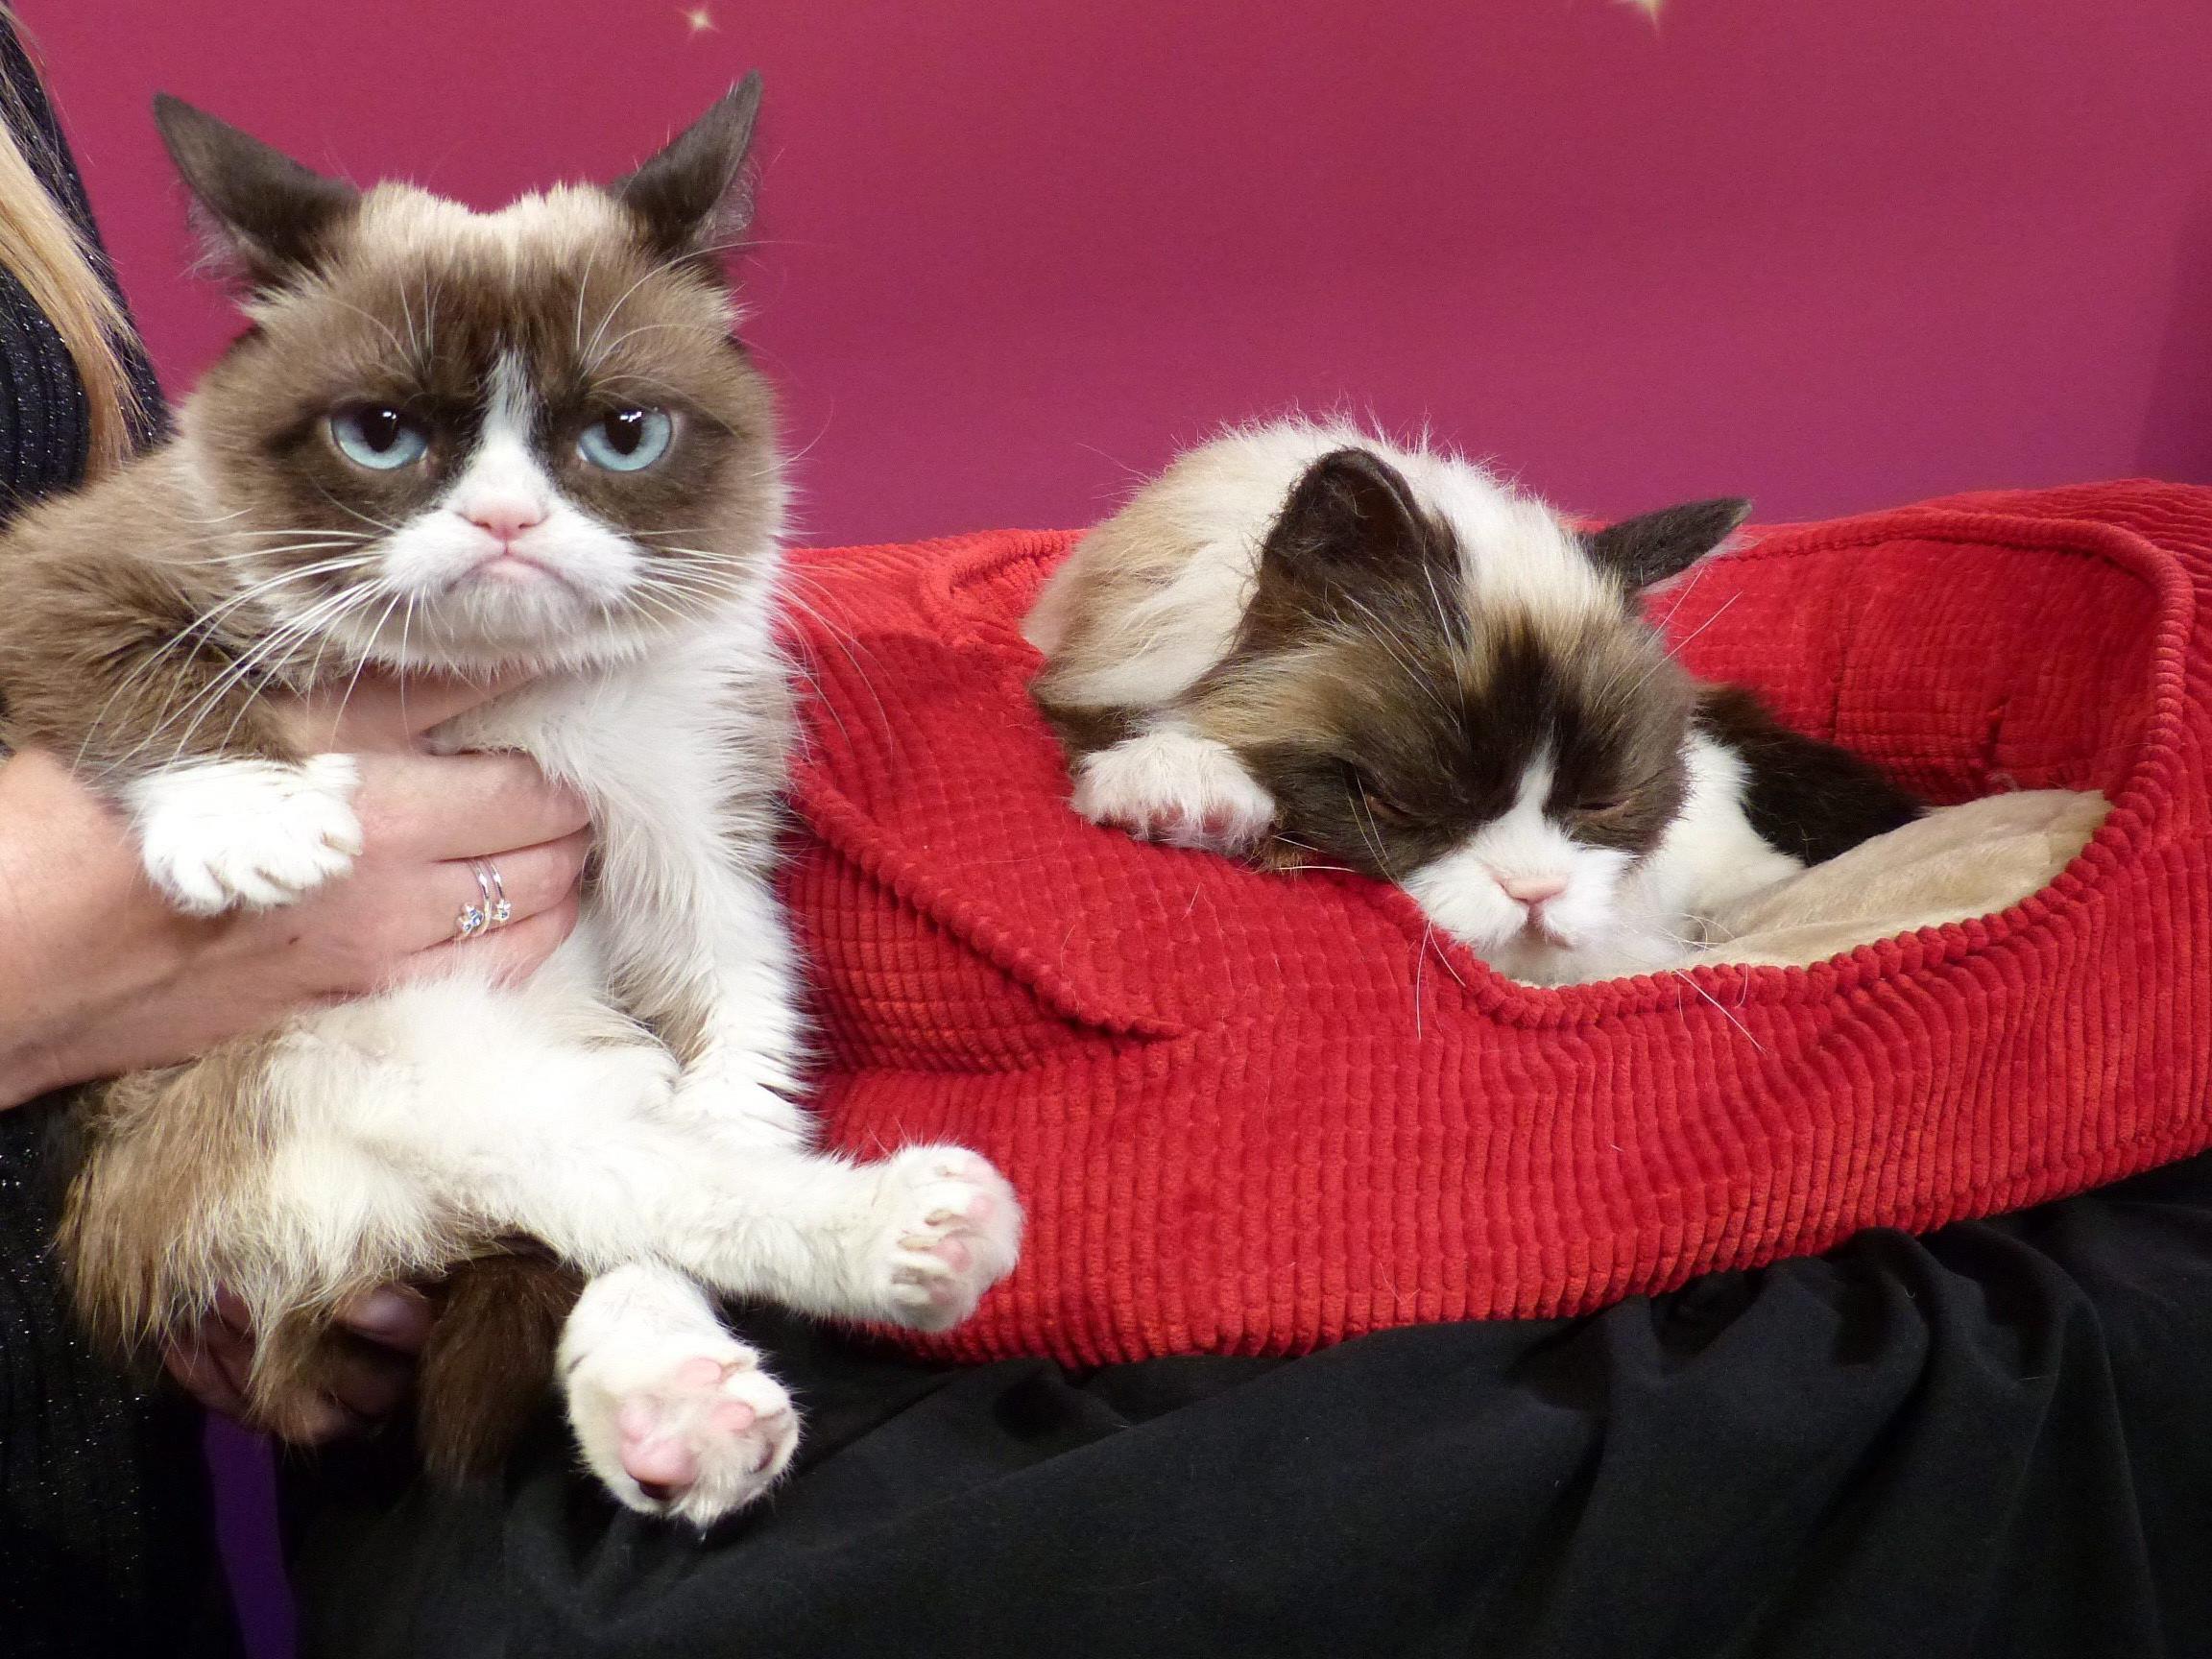 "Grumpy Cat" st längst ein Internet-Star mit Facebook-Fans und YouTube-Videos. Nun ist sie auch noch "First Cat" bei Madame Tussauds.